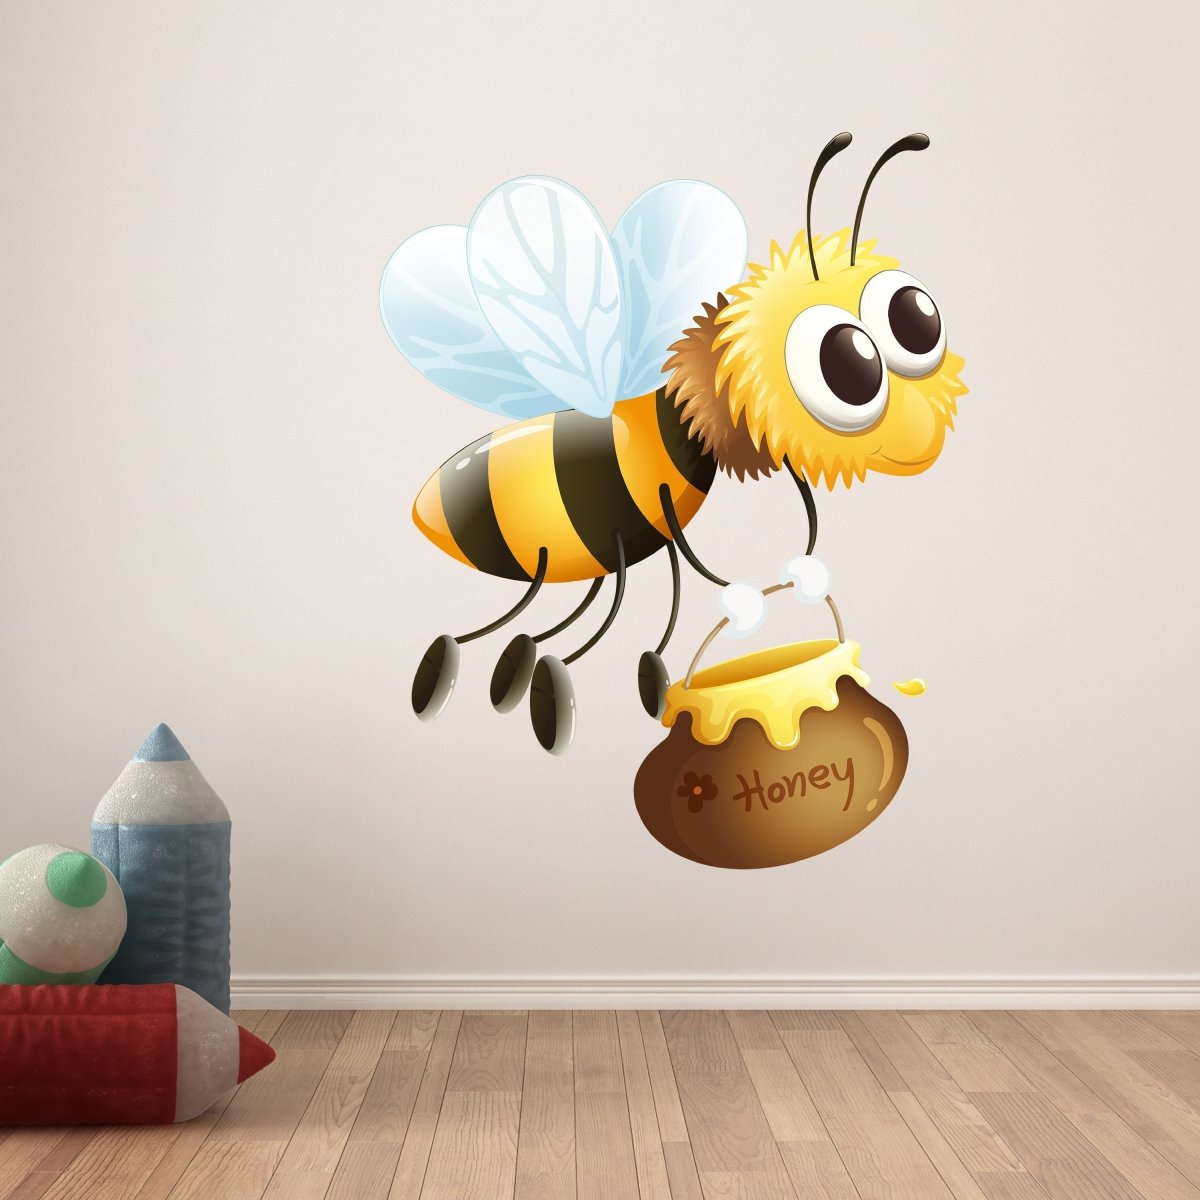 Wandsticker Honig-Biene, Honigtopf, Insekten, Natur WS00000154 - Bild 6